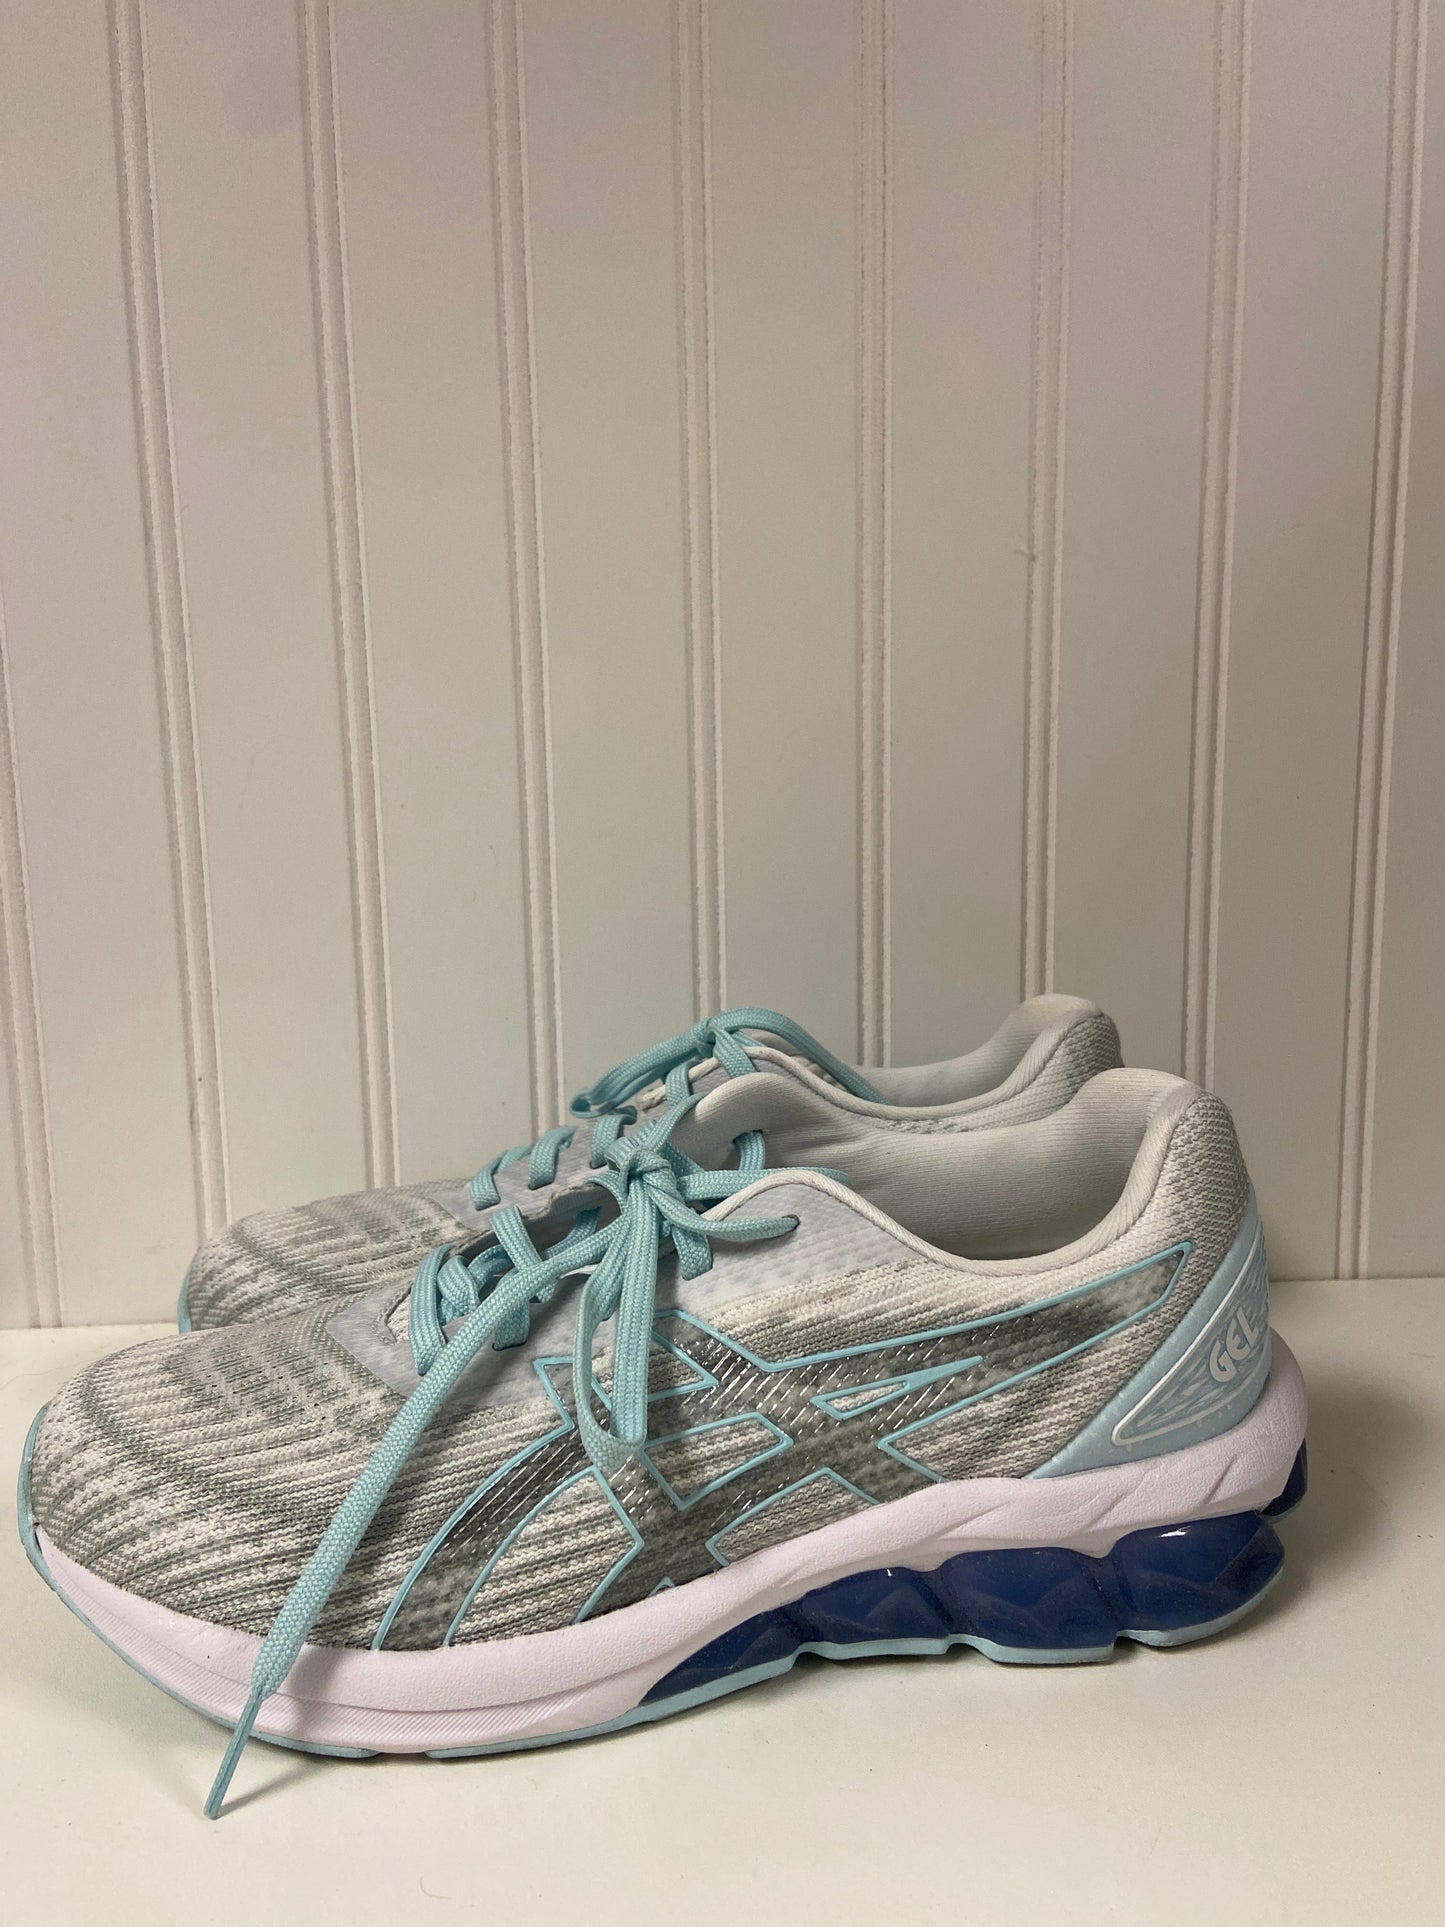 Blue & Grey Shoes Athletic Asics, Size 7